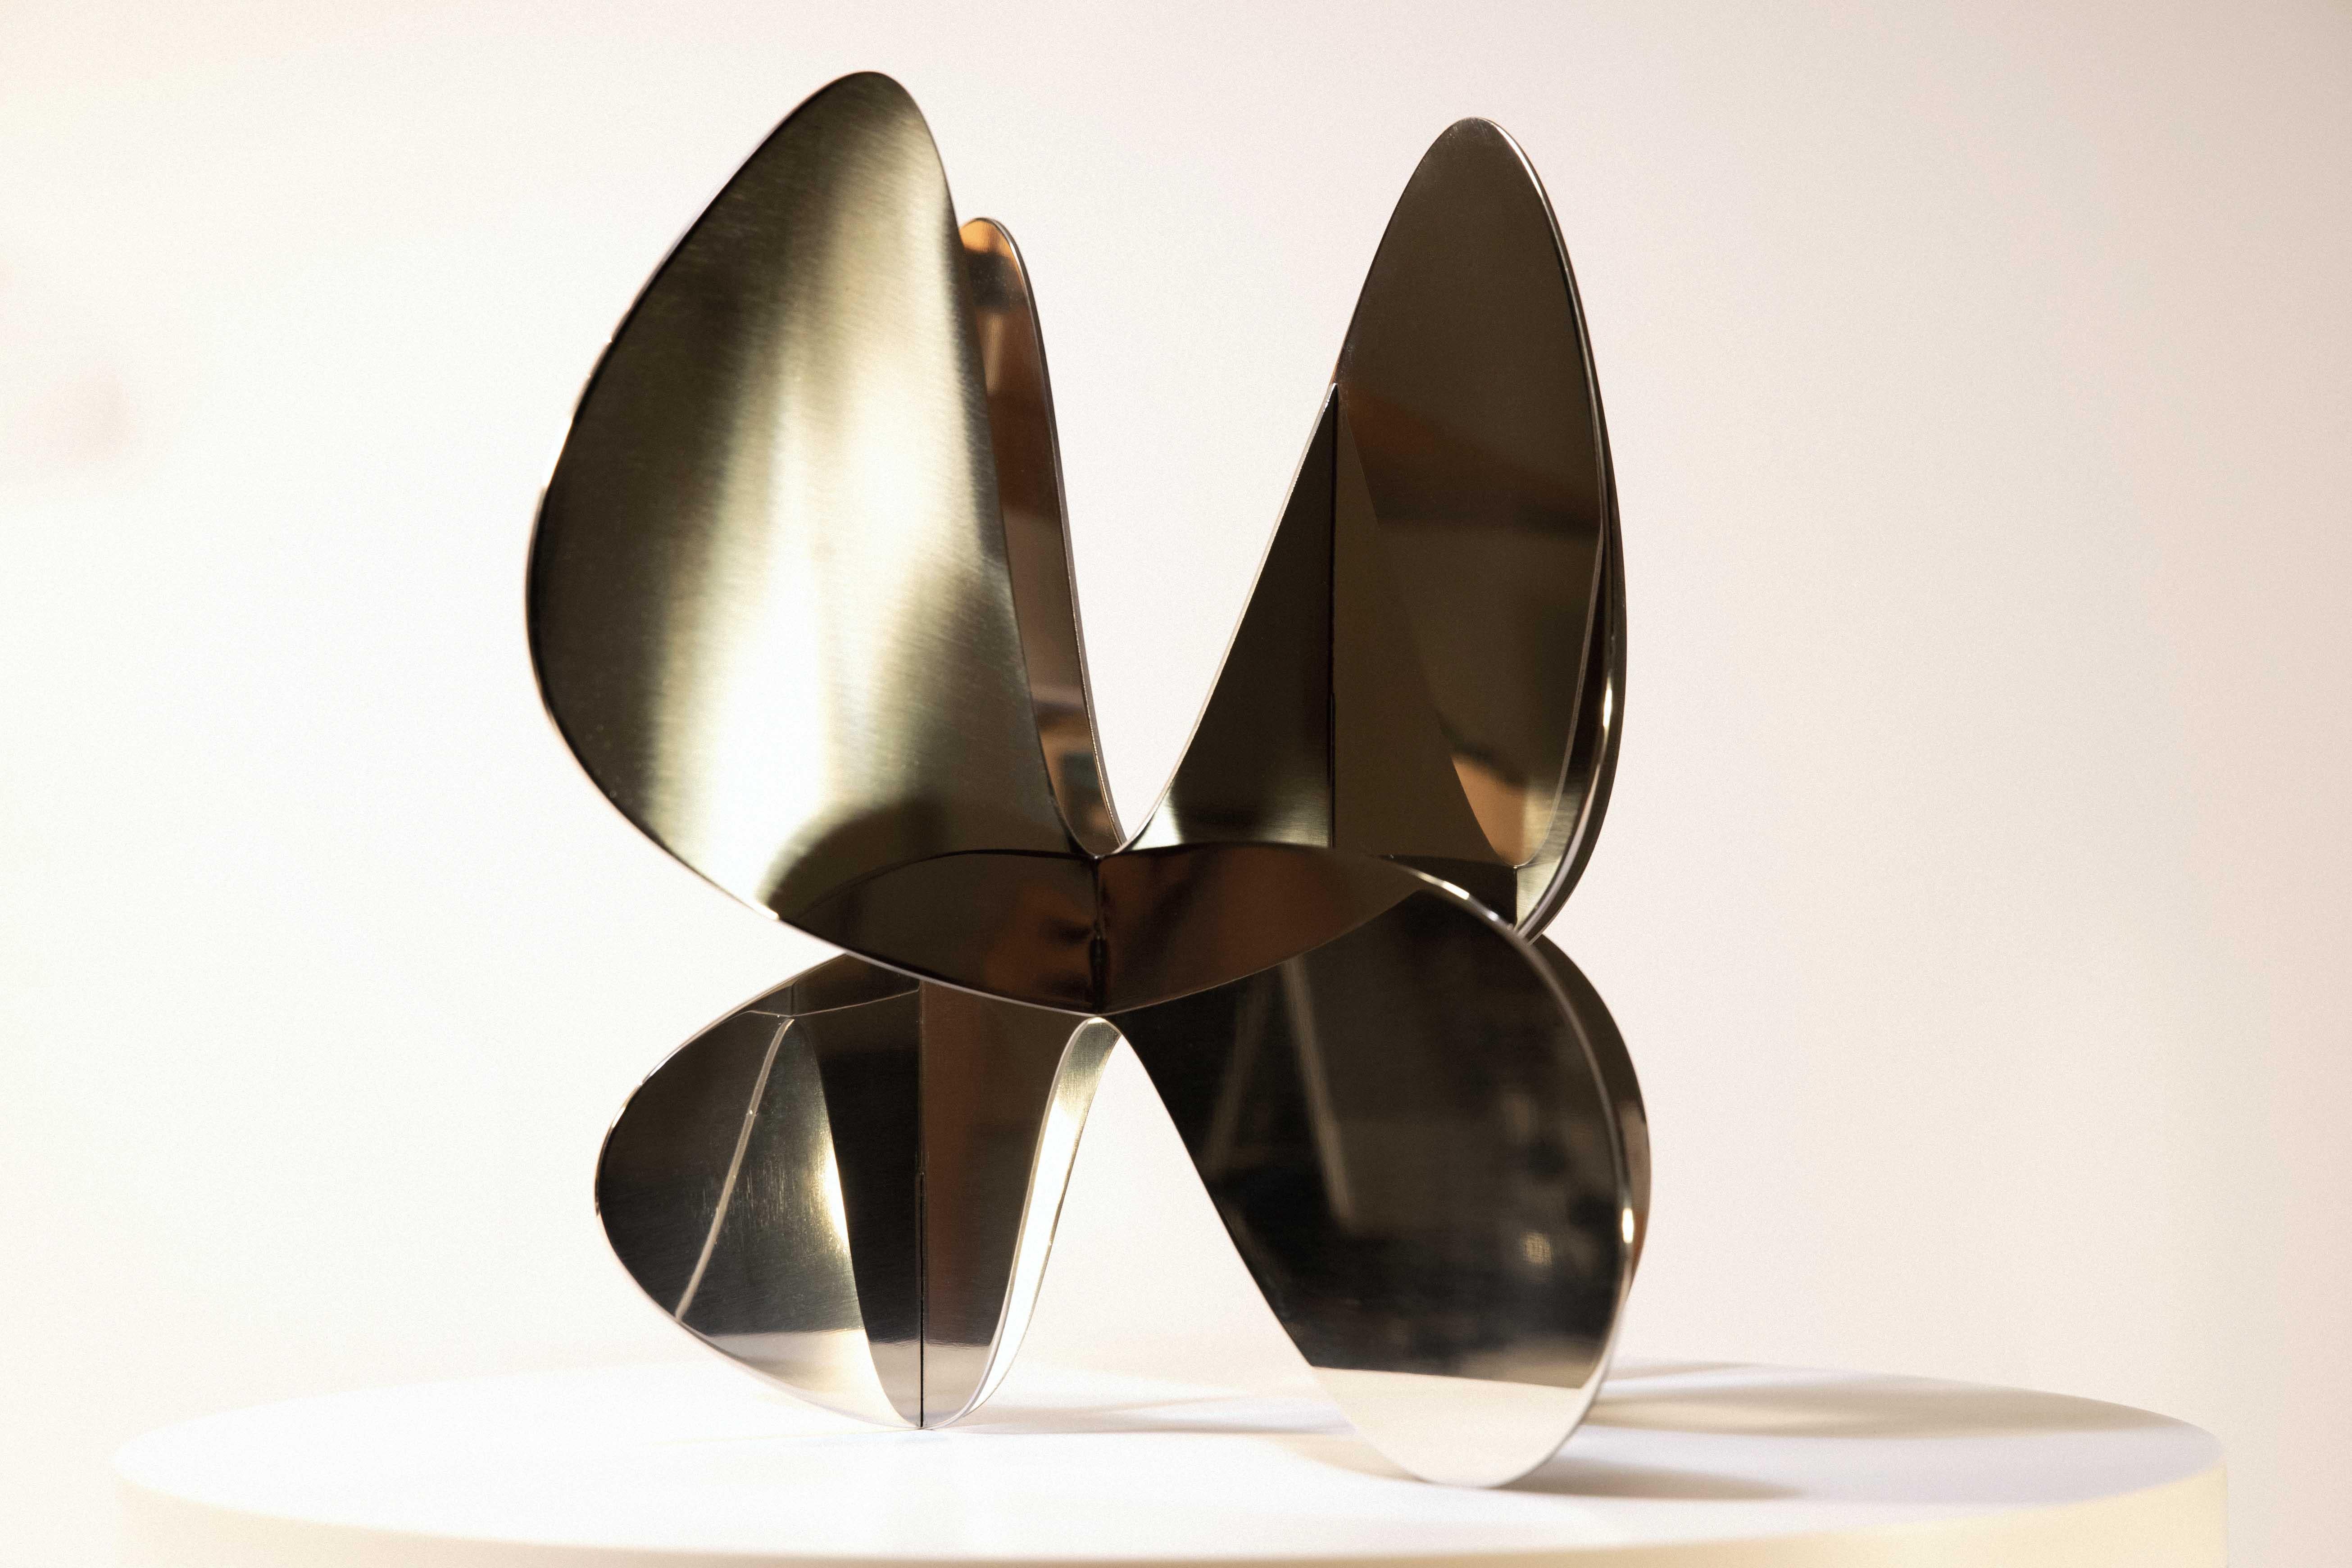 Barricada #7 aip S est une sculpture en acier inoxydable brossé de l'artiste contemporain Alejandro Vega Beele, dont les dimensions sont de 32 × 39 × 38 cm (12,6 × 15,4 × 15 in). 
La sculpture est signée et numérotée, elle fait partie d'une édition